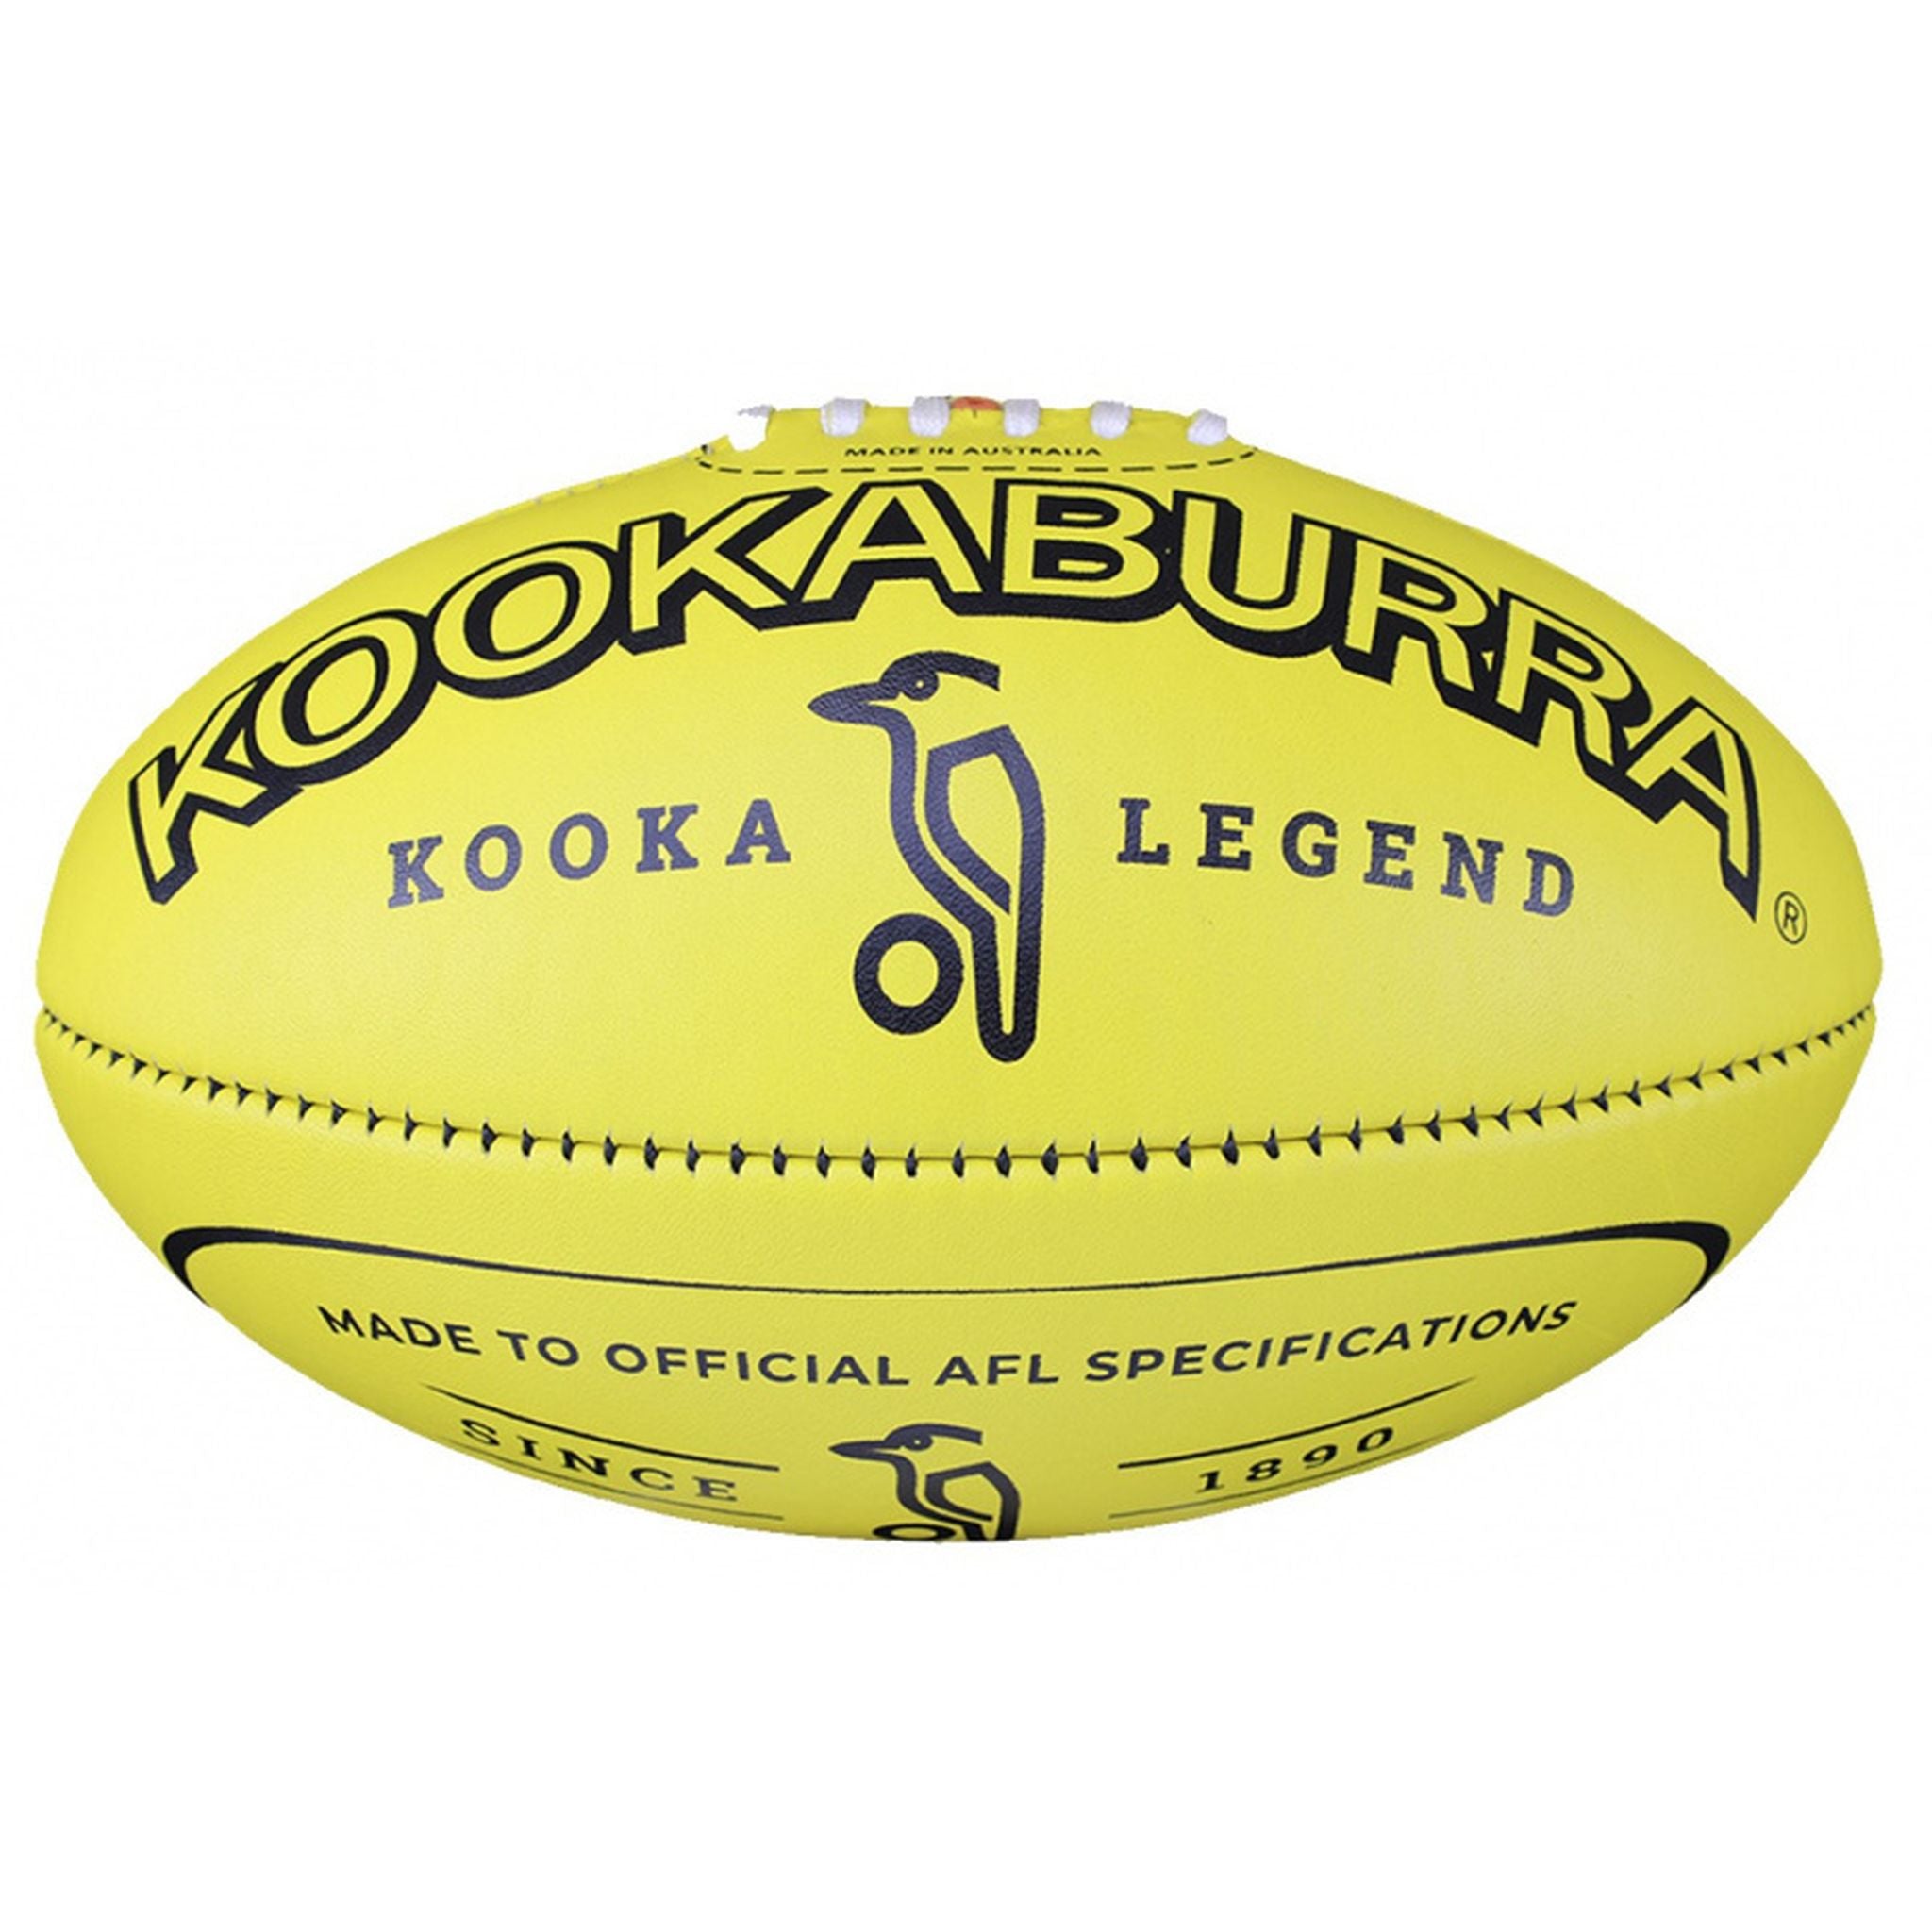 Kookaburra Legend Leather Football